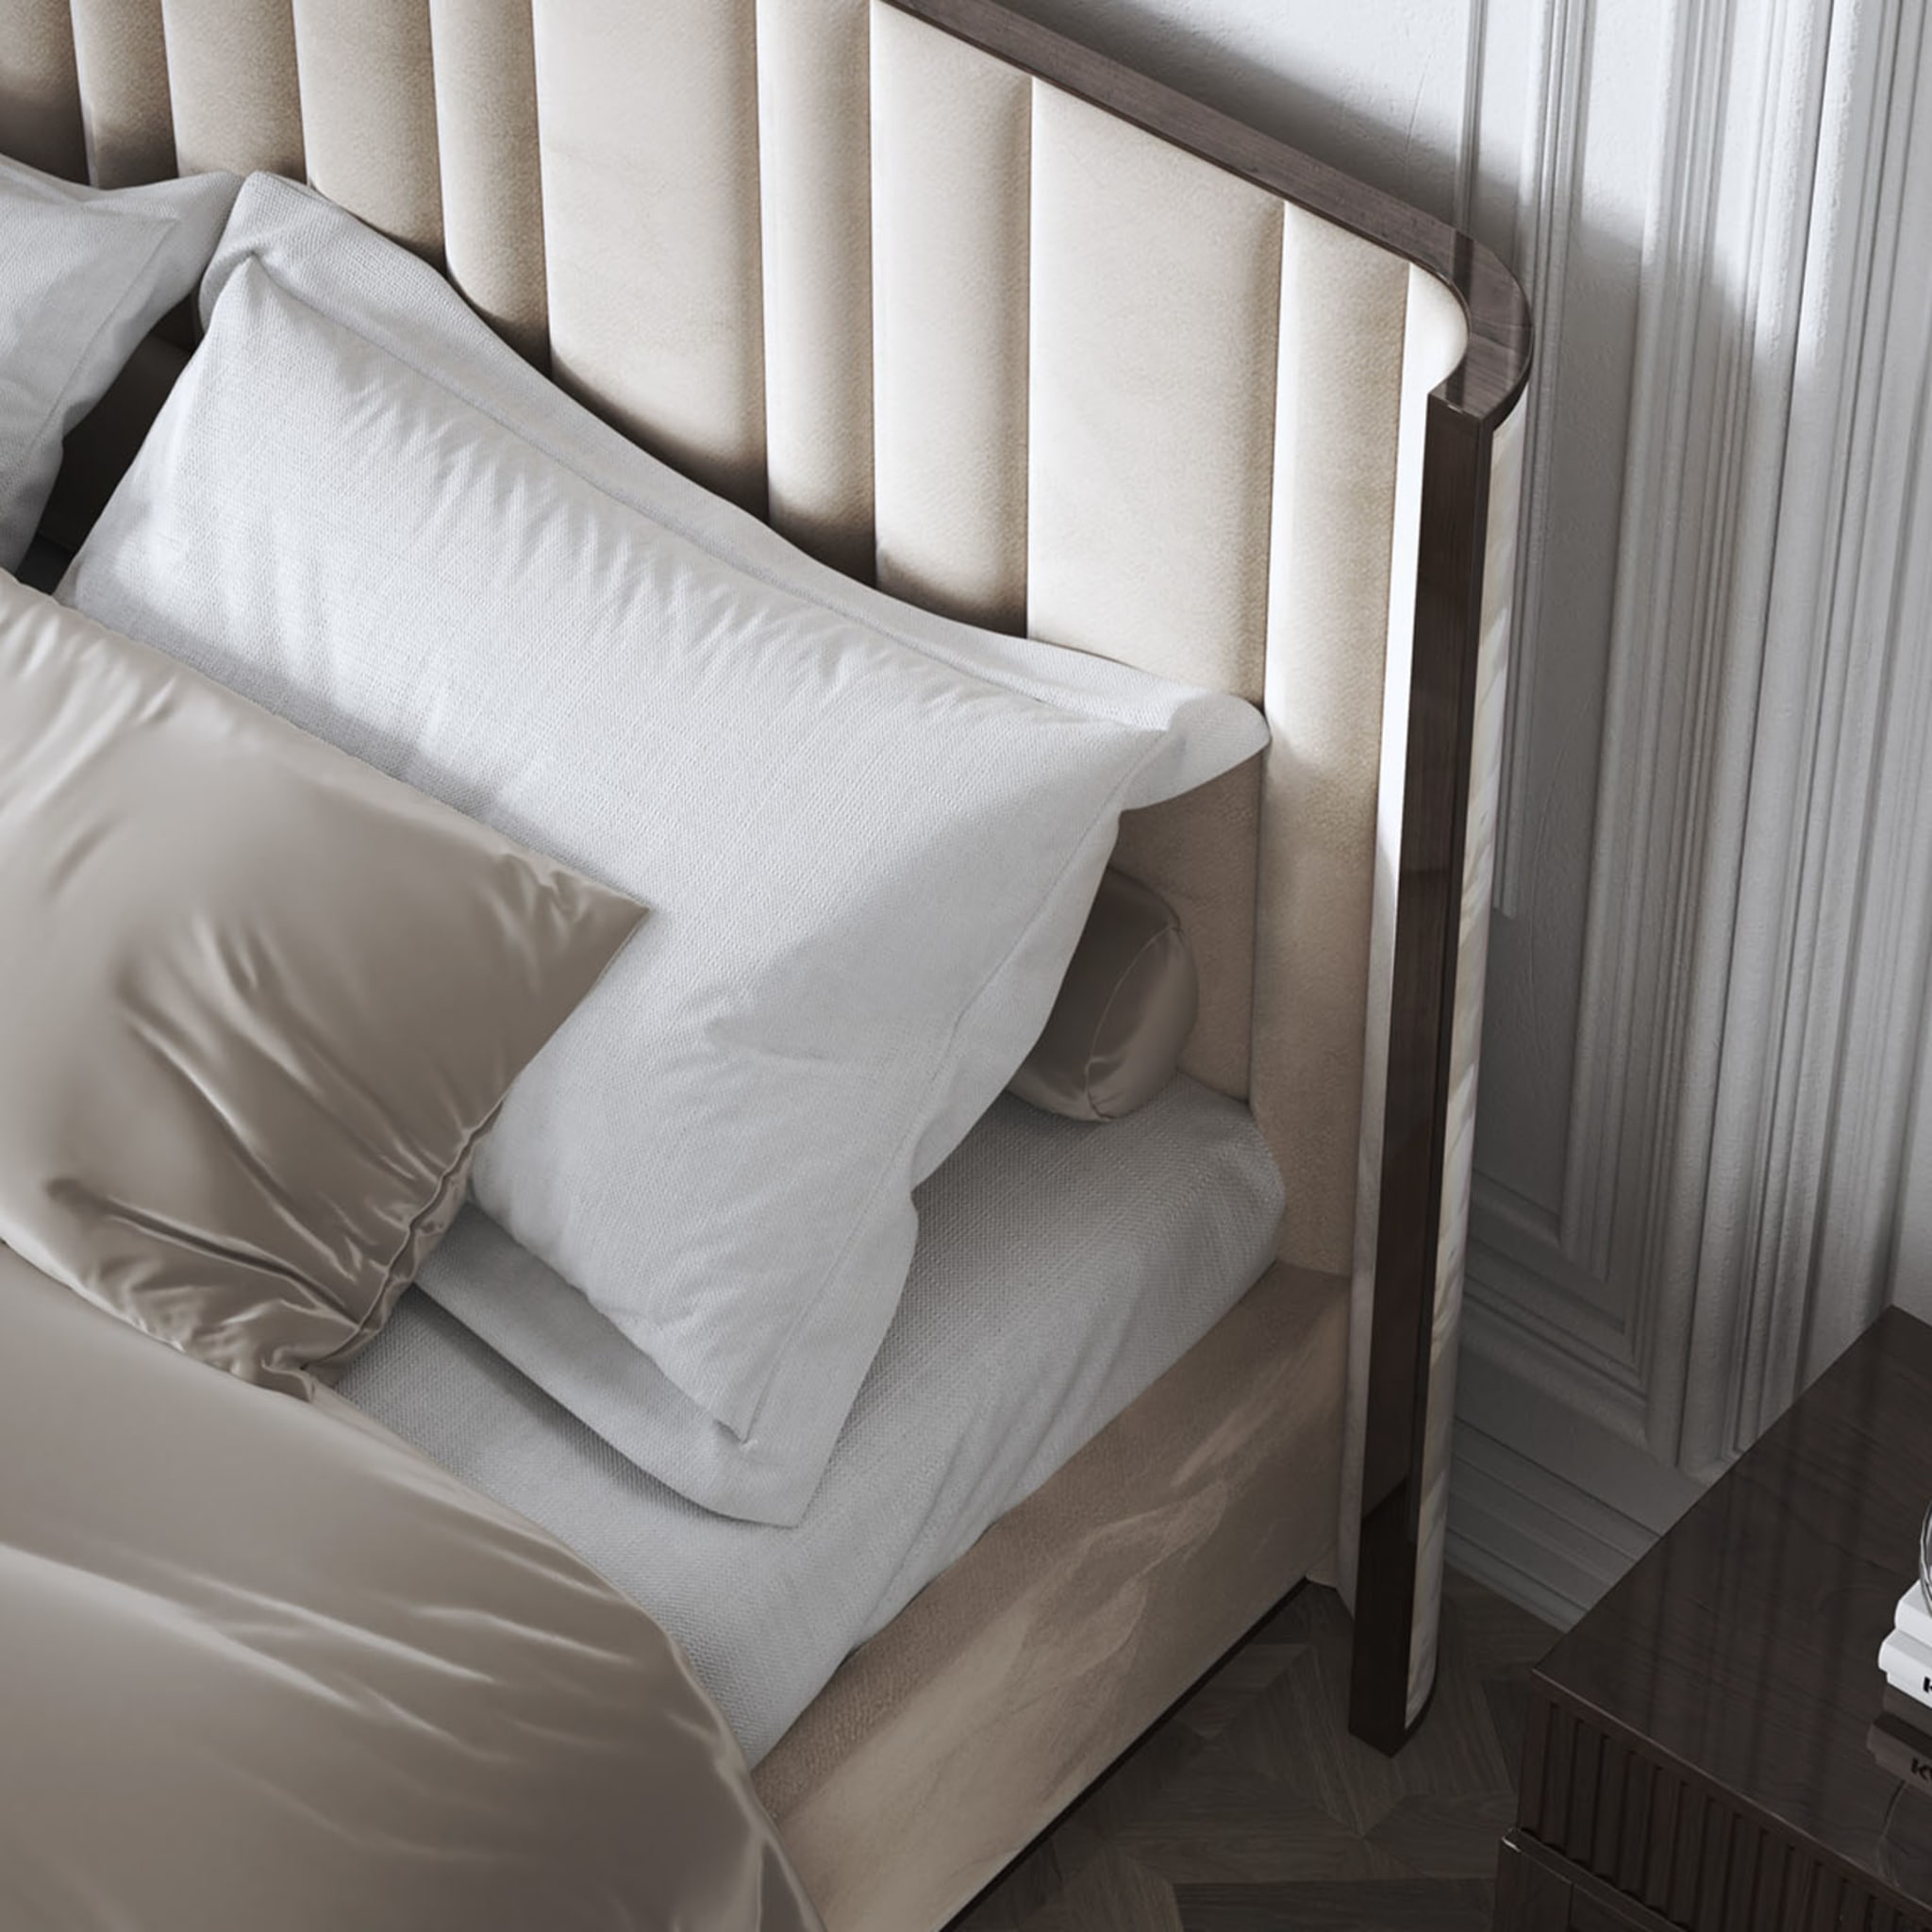  Saga 125 Italian Curved Bed Upholstered In Velvet Fabric - Alternative view 1